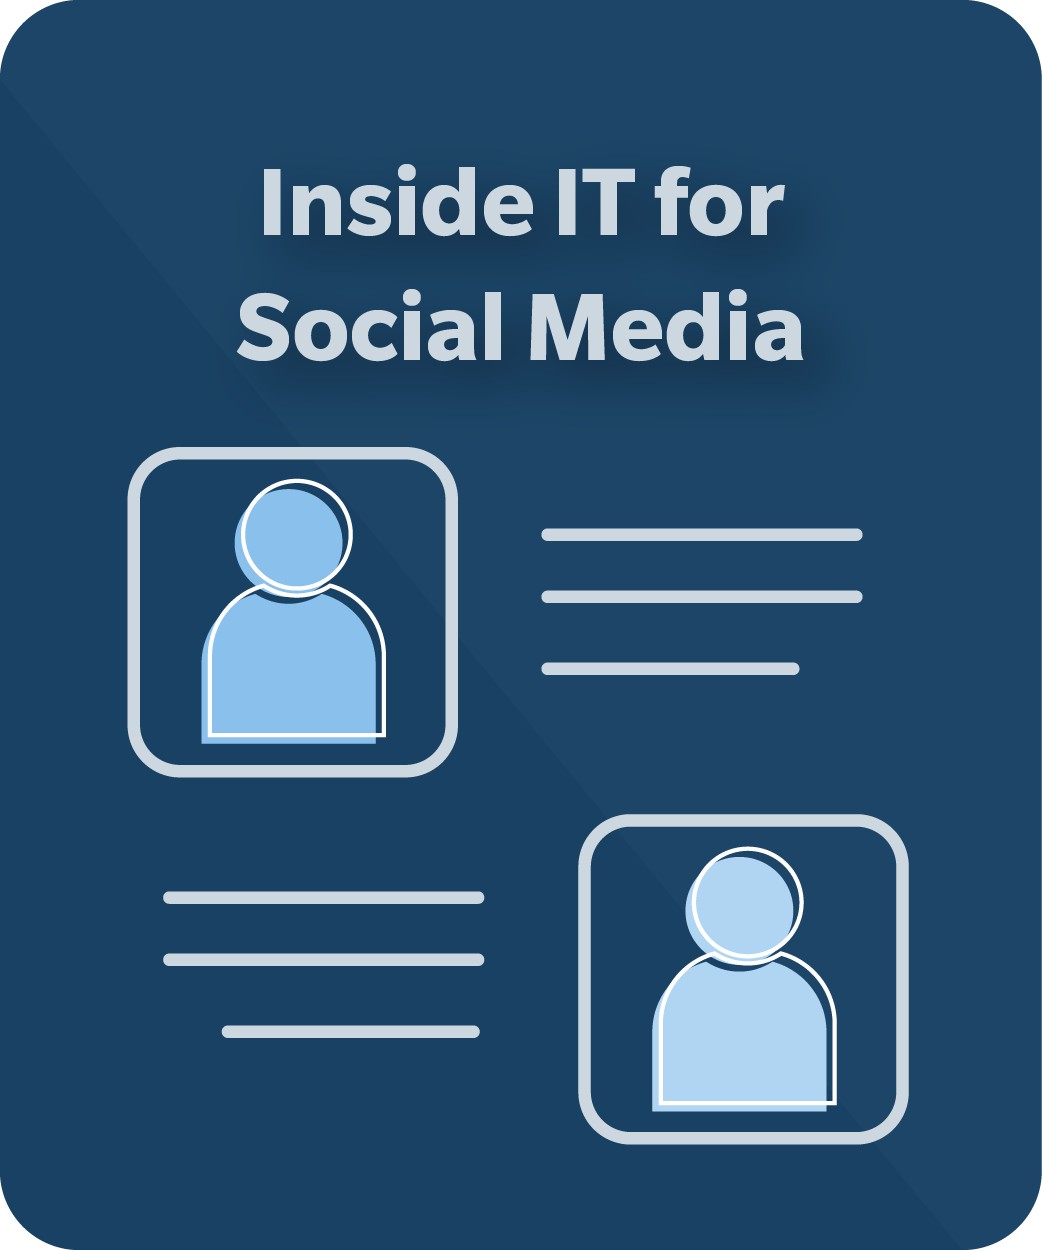 Inside IT for Social Media